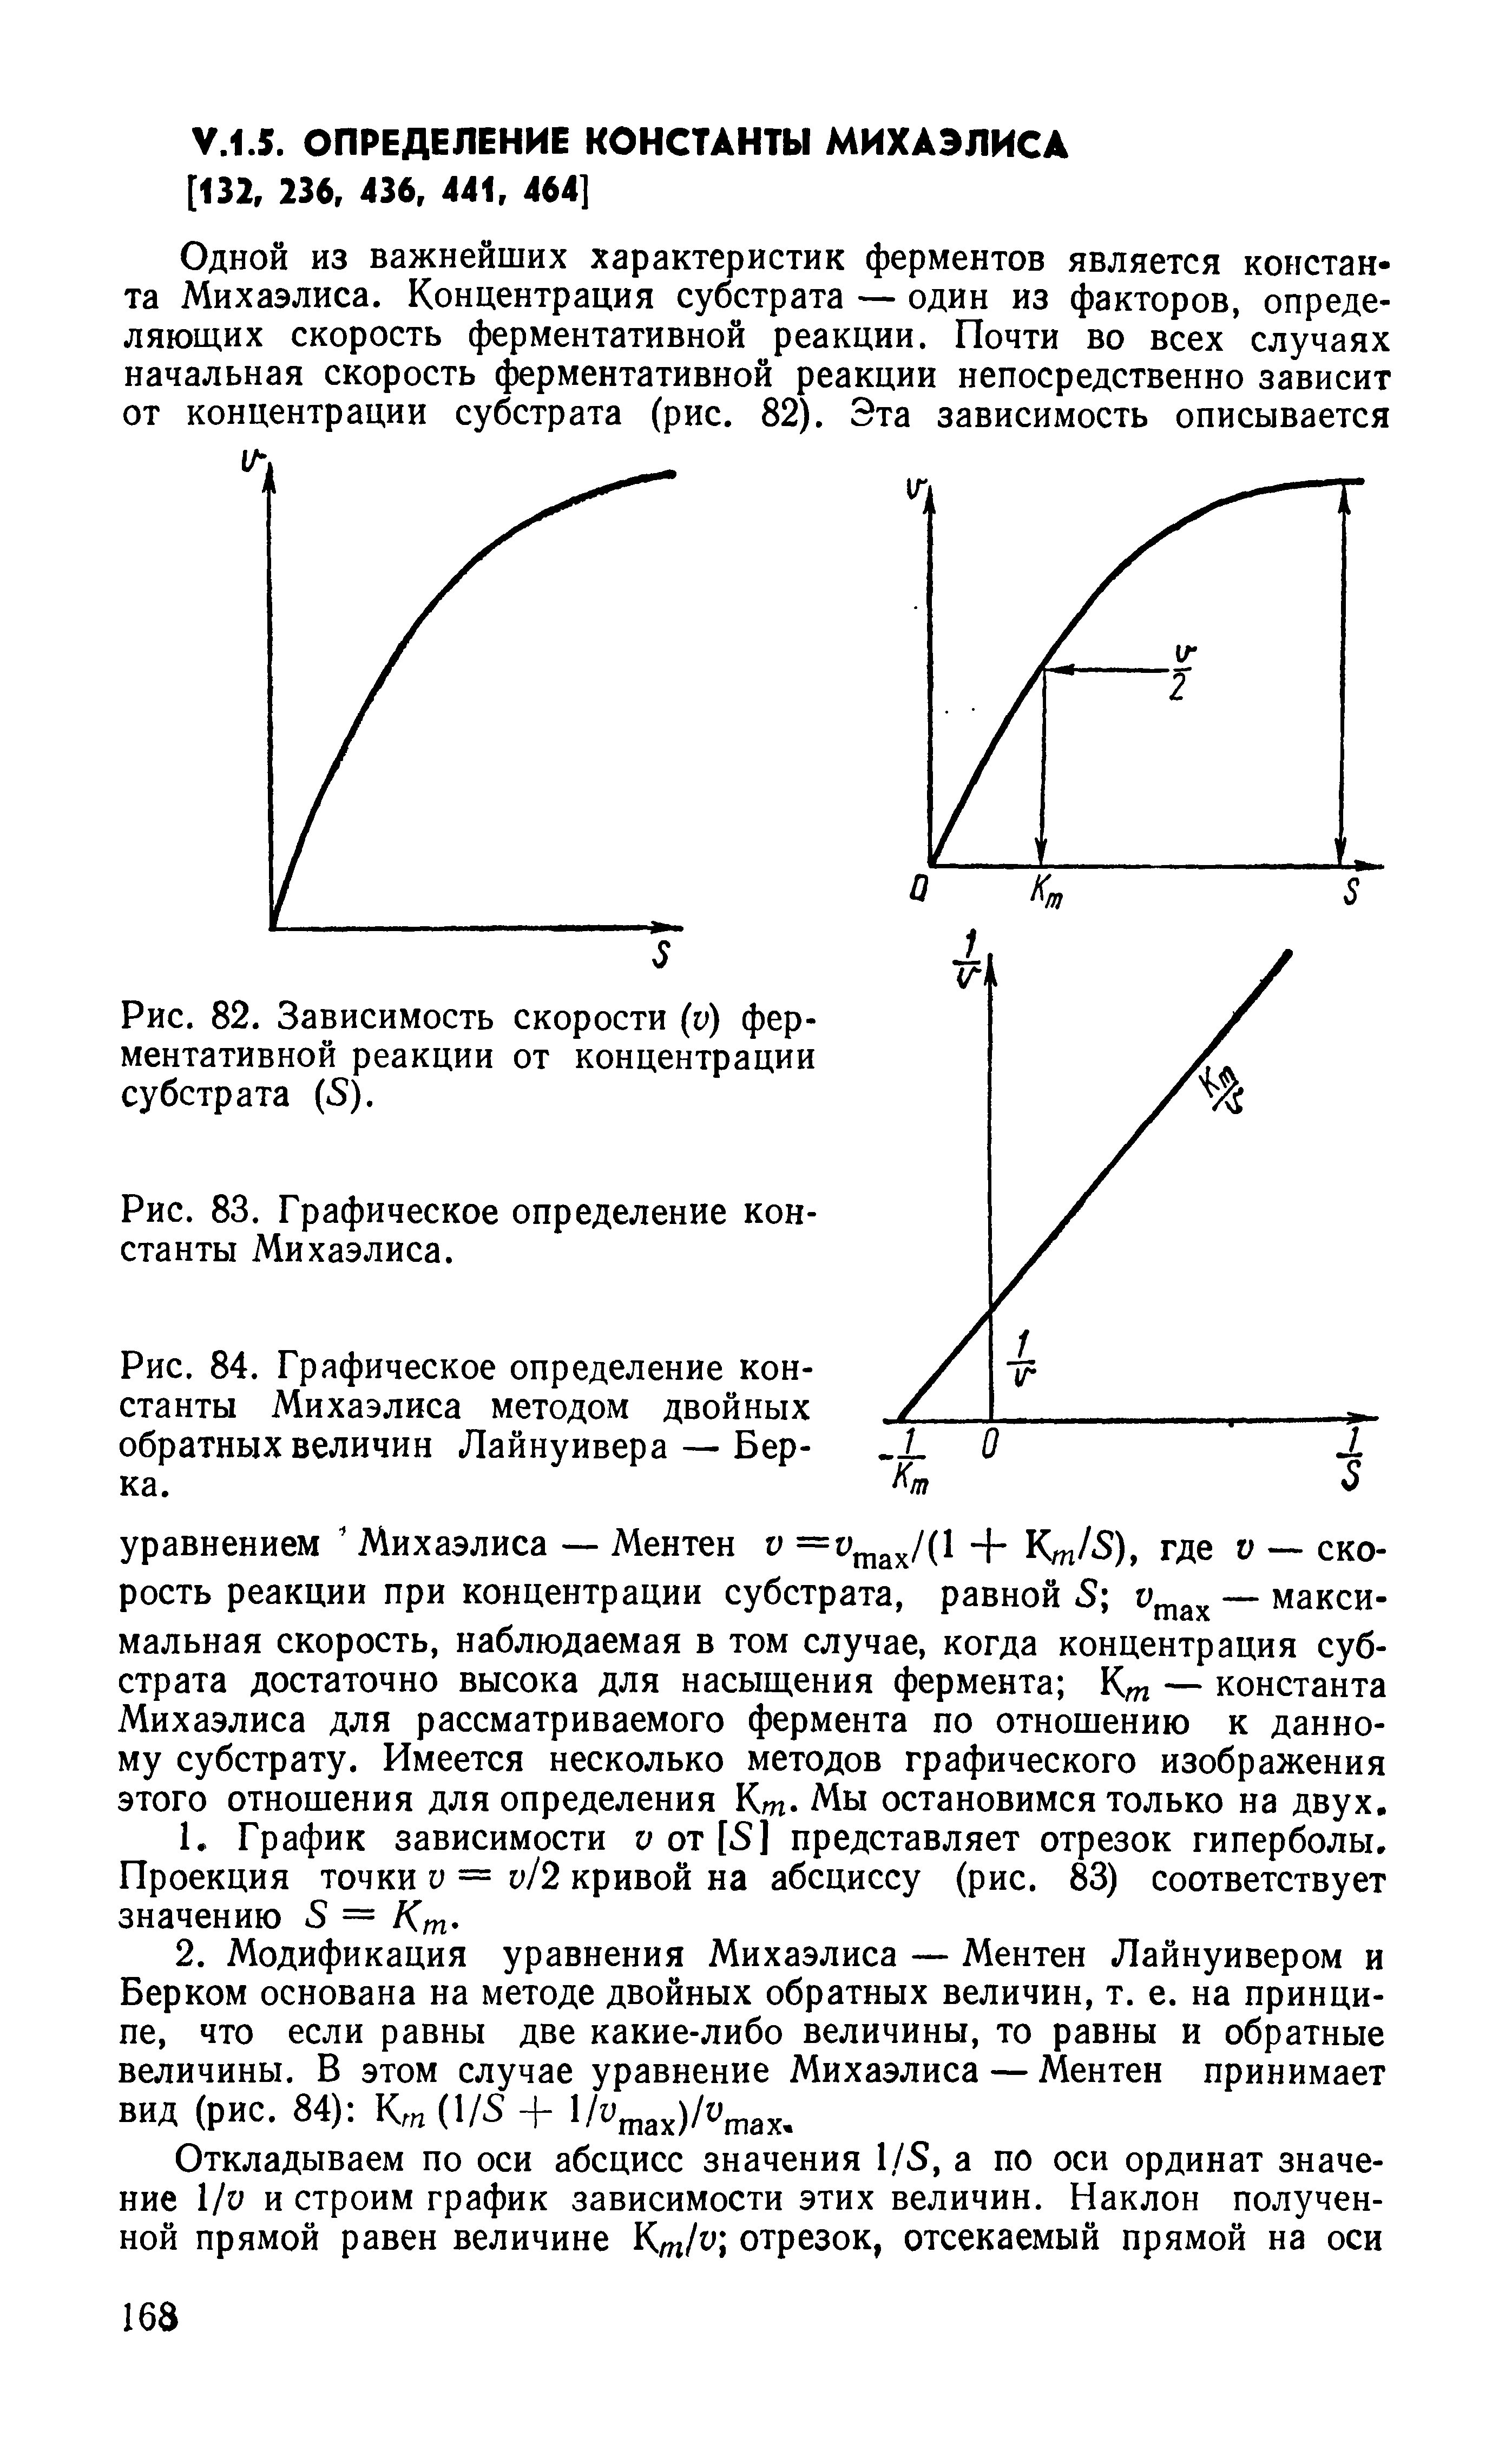 Рис. 84. Графическое определение константы Михаэлиса методом двойных обратных величин Лайнуивера — Берка.